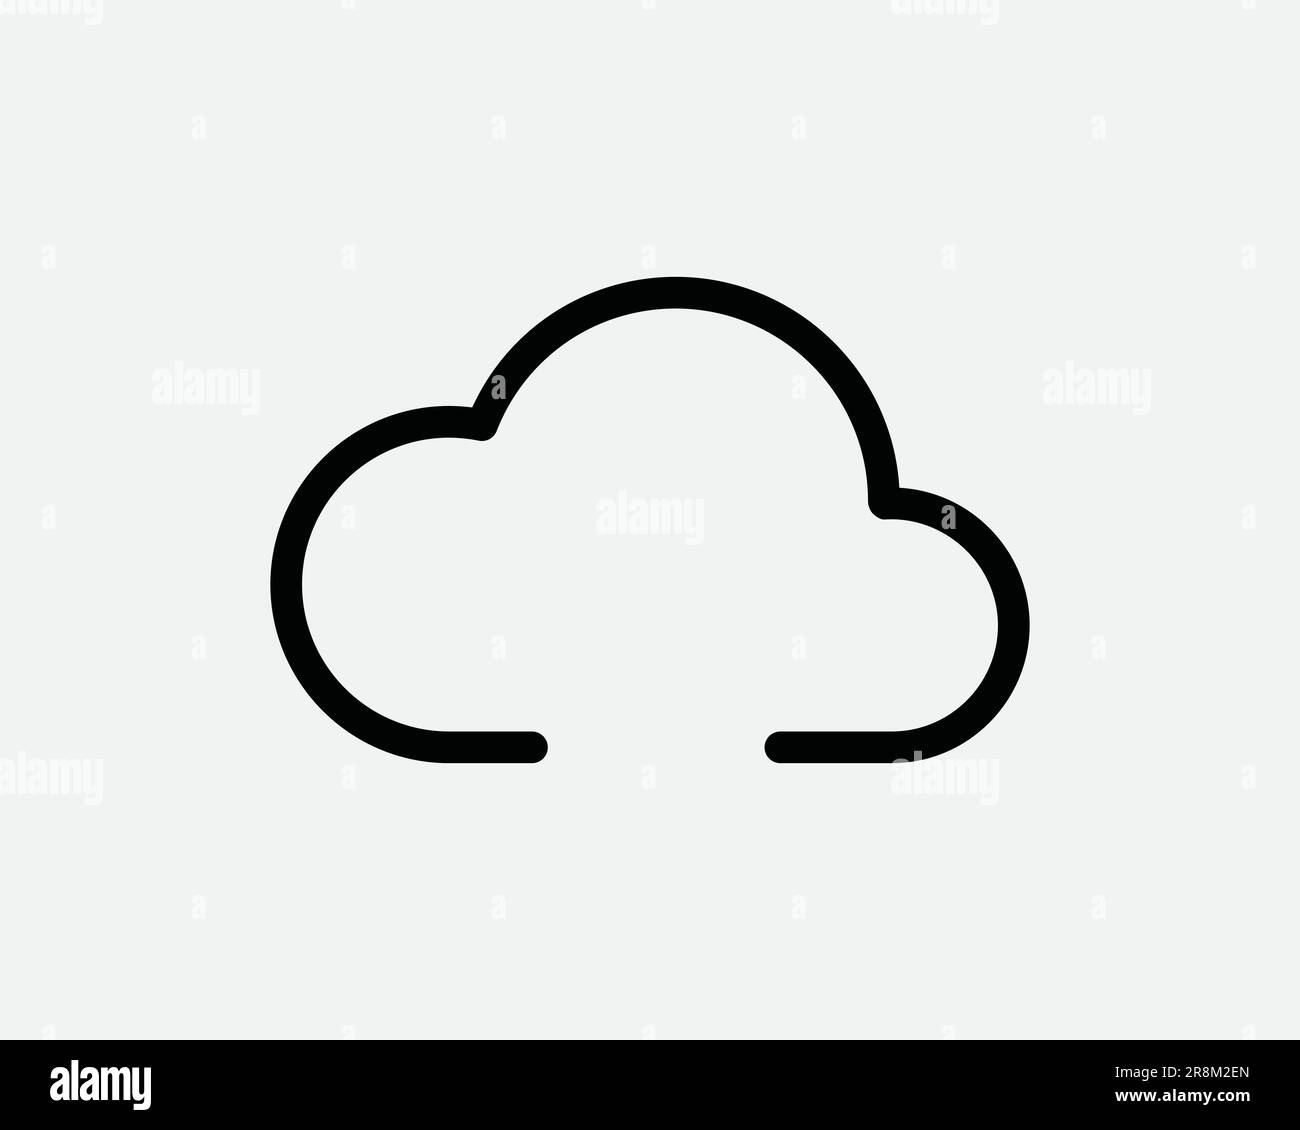 Icône Cloud. Météo saison climat Cloudy Web Computer Data Storage Server. Signe blanc noir symbole Illustration graphique Clipart EPS Vector Illustration de Vecteur